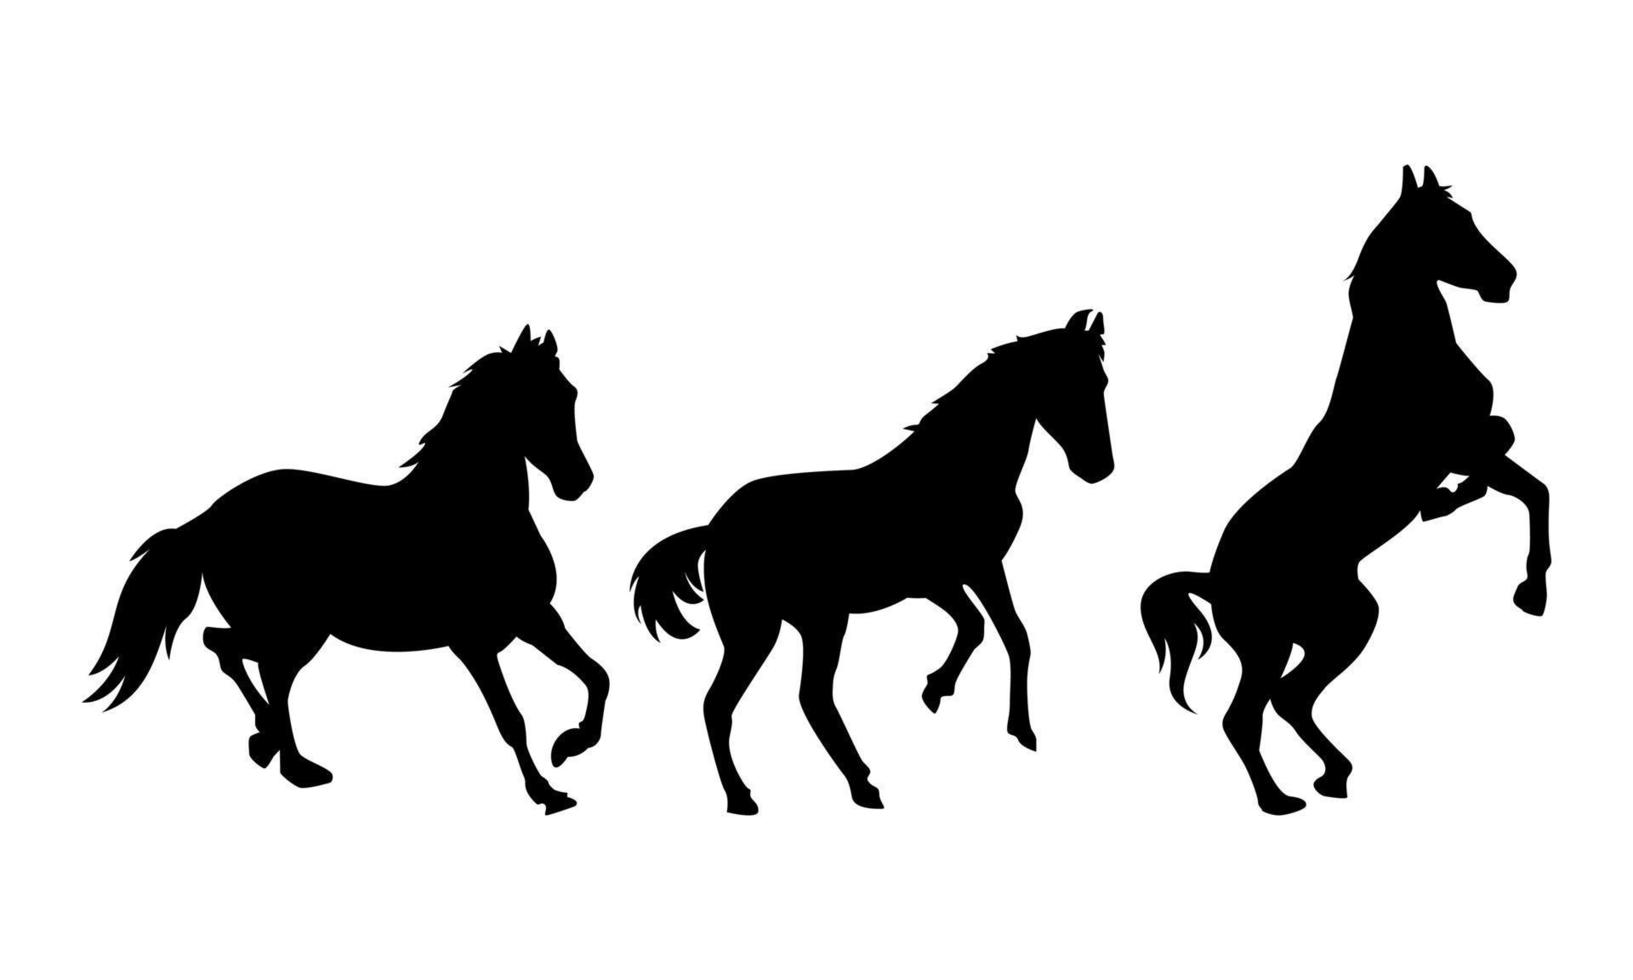 ensemble de silhouettes de nombreuses les chevaux avec différent pose, gestes. côté voir. en cours d'exécution, hennissant. le concept de animal, animal de compagnie, cultiver, sport, cheval courses, véhicule. plat vecteur illustration.